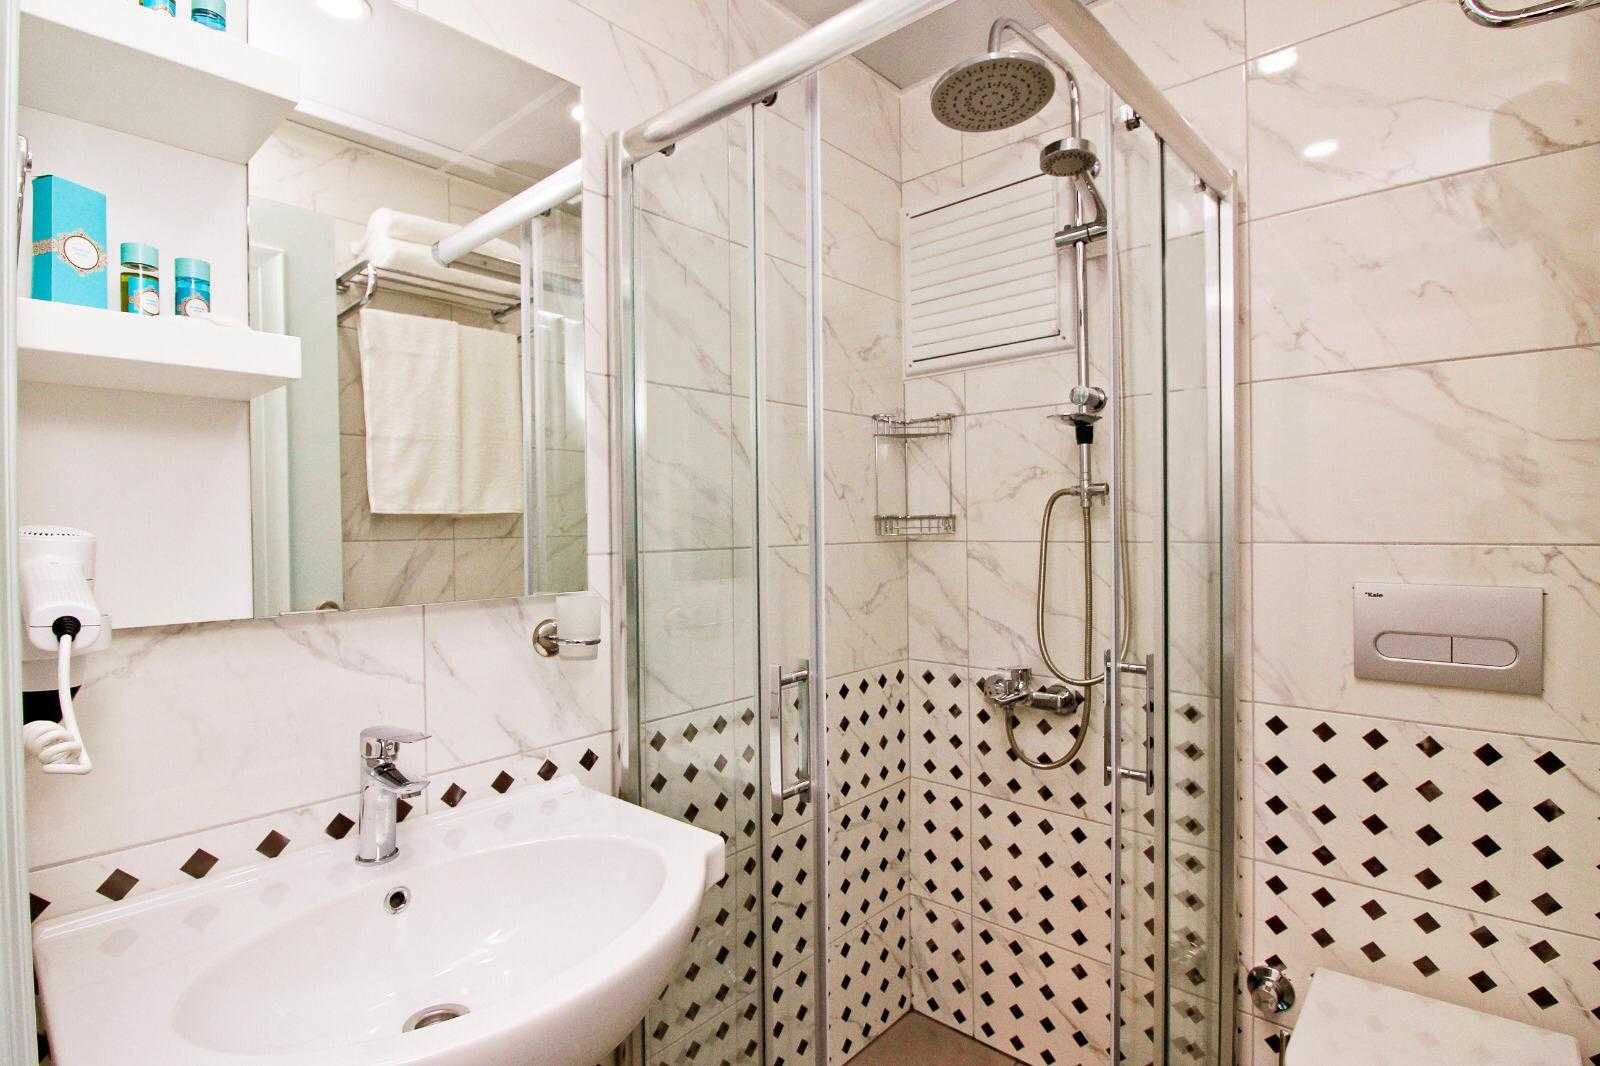 Lara Beach Boutique Hotel - Modern shower rooms